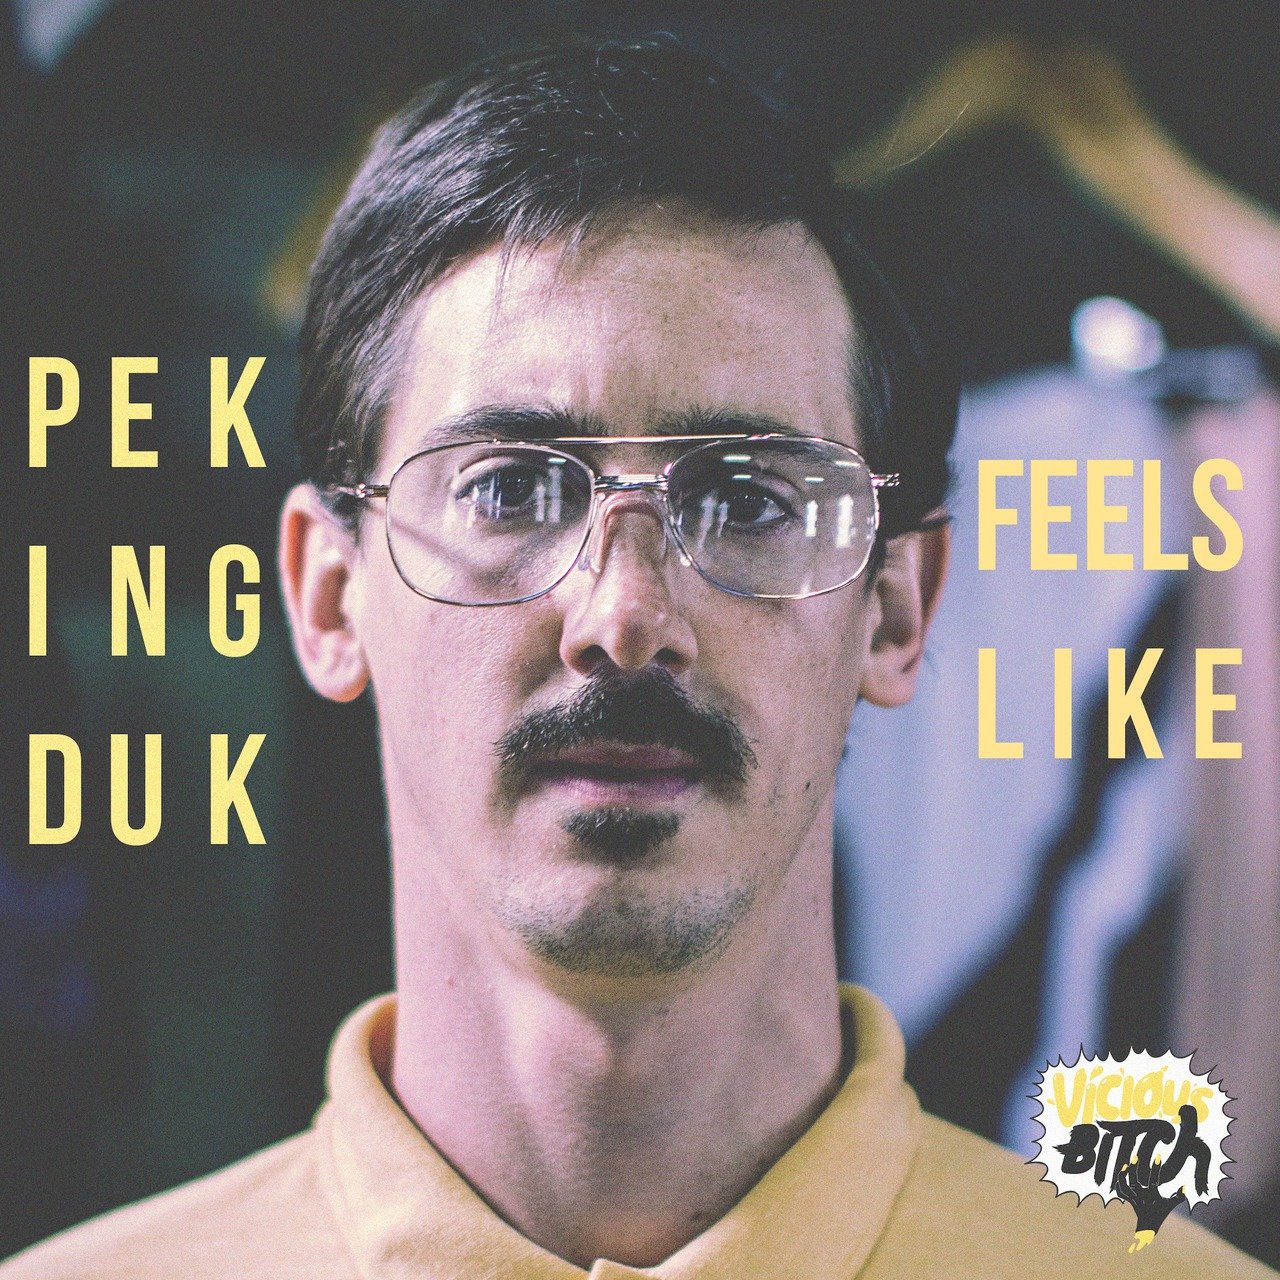 Peking Duk — Feels Like cover artwork